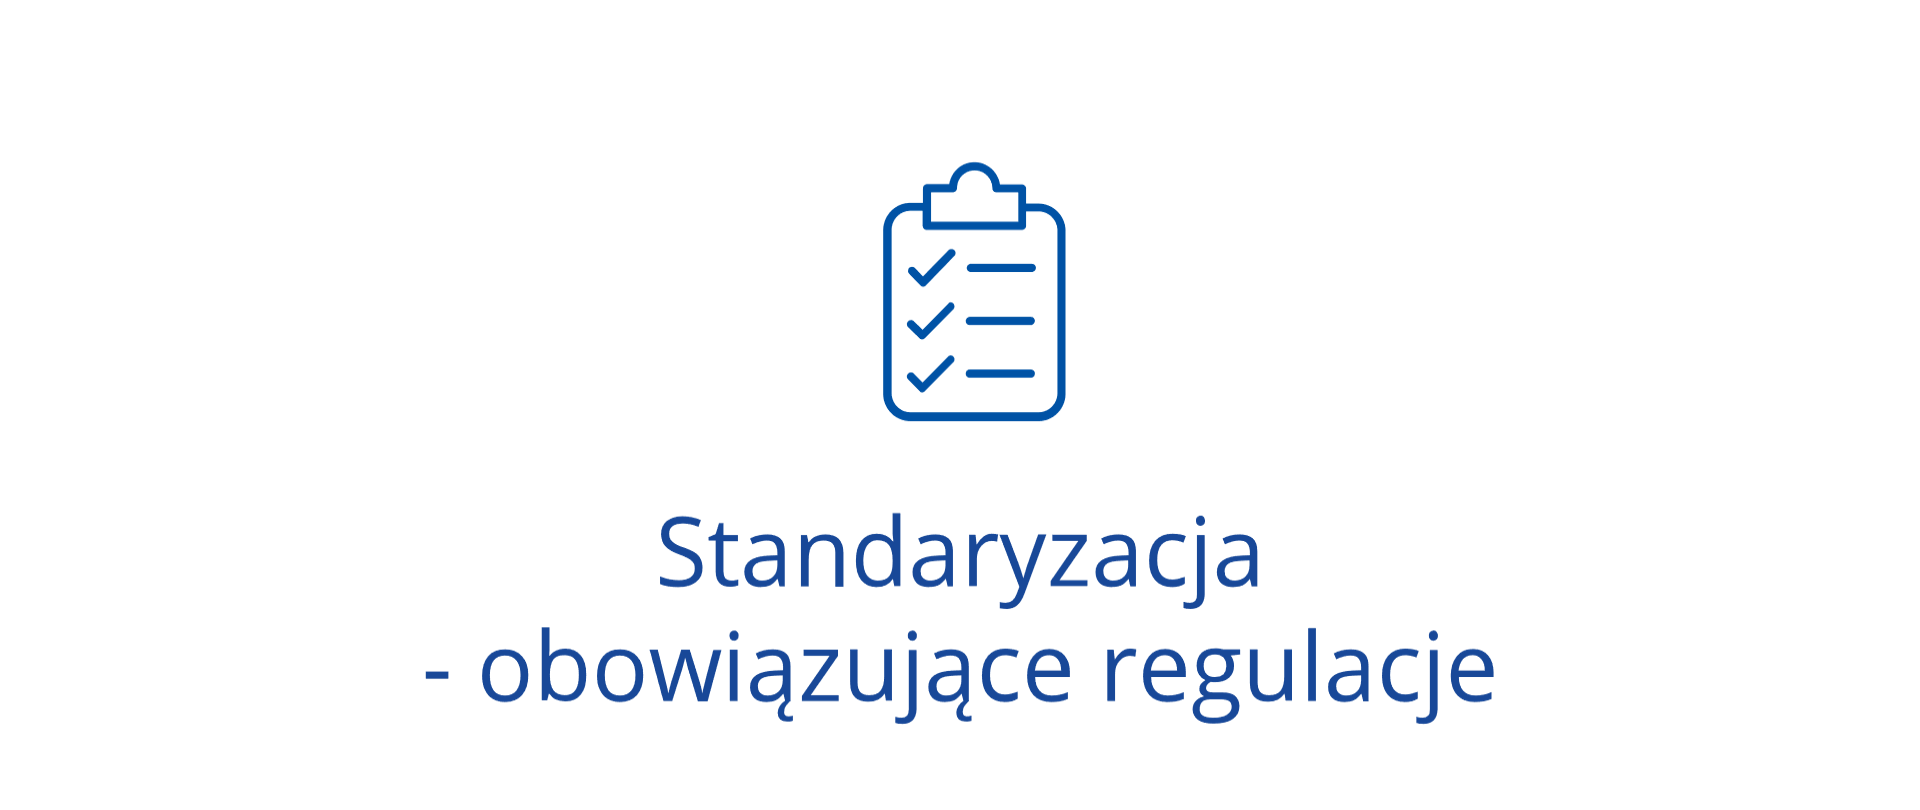 Standaryzacja - obowiązujące regulacje - ikona dokumentu z listą zadań